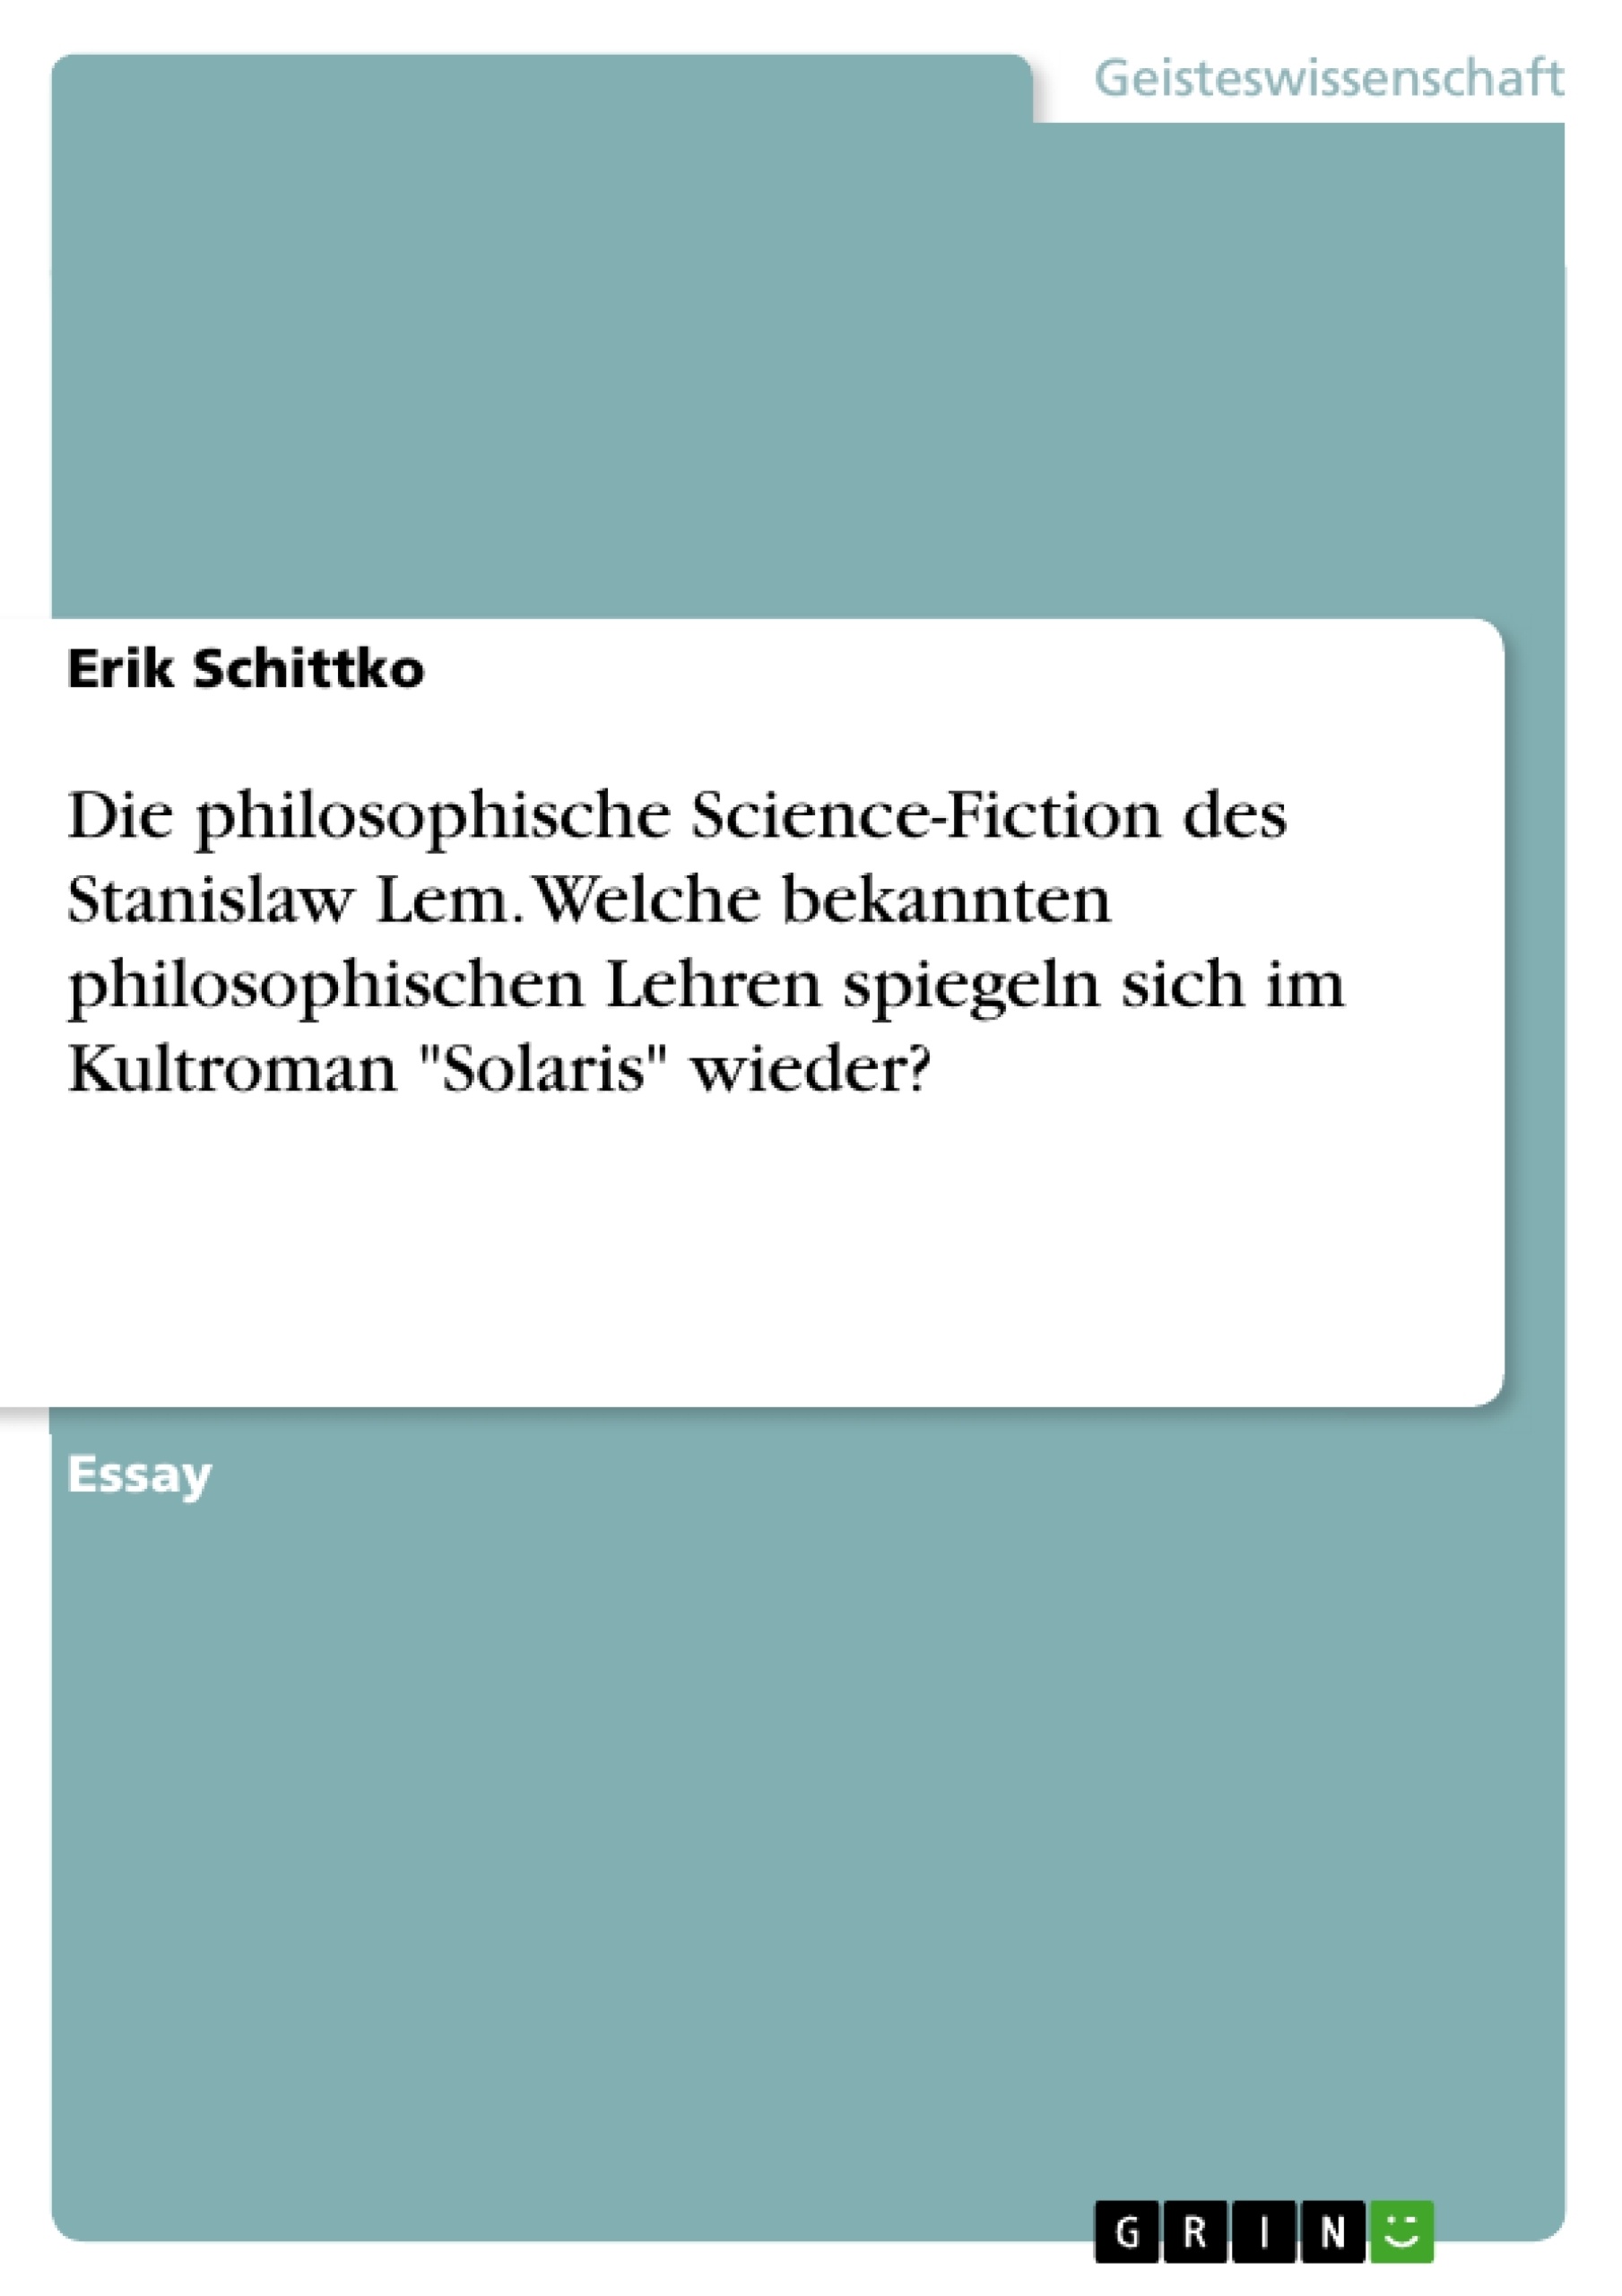 Title: Die philosophische Science-Fiction des Stanislaw Lem. Welche bekannten philosophischen Lehren spiegeln sich im Kultroman "Solaris" wieder?